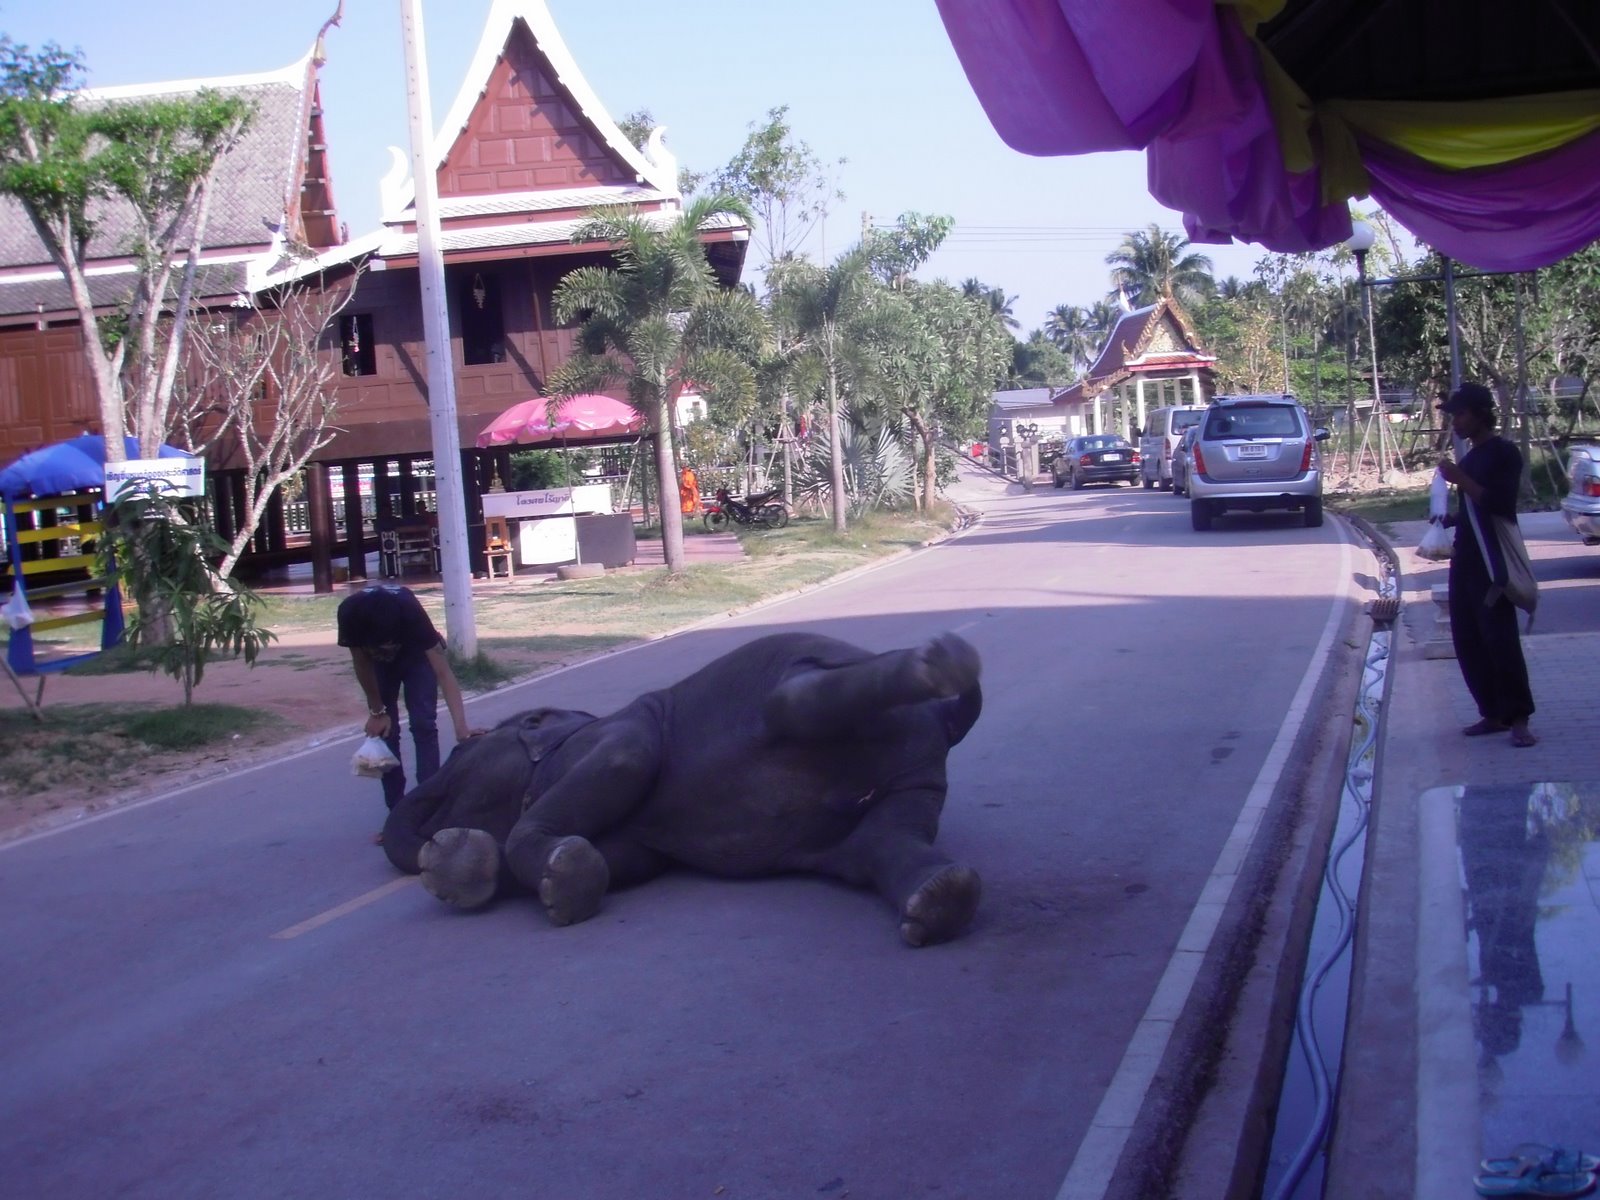 One Lazy Elephant